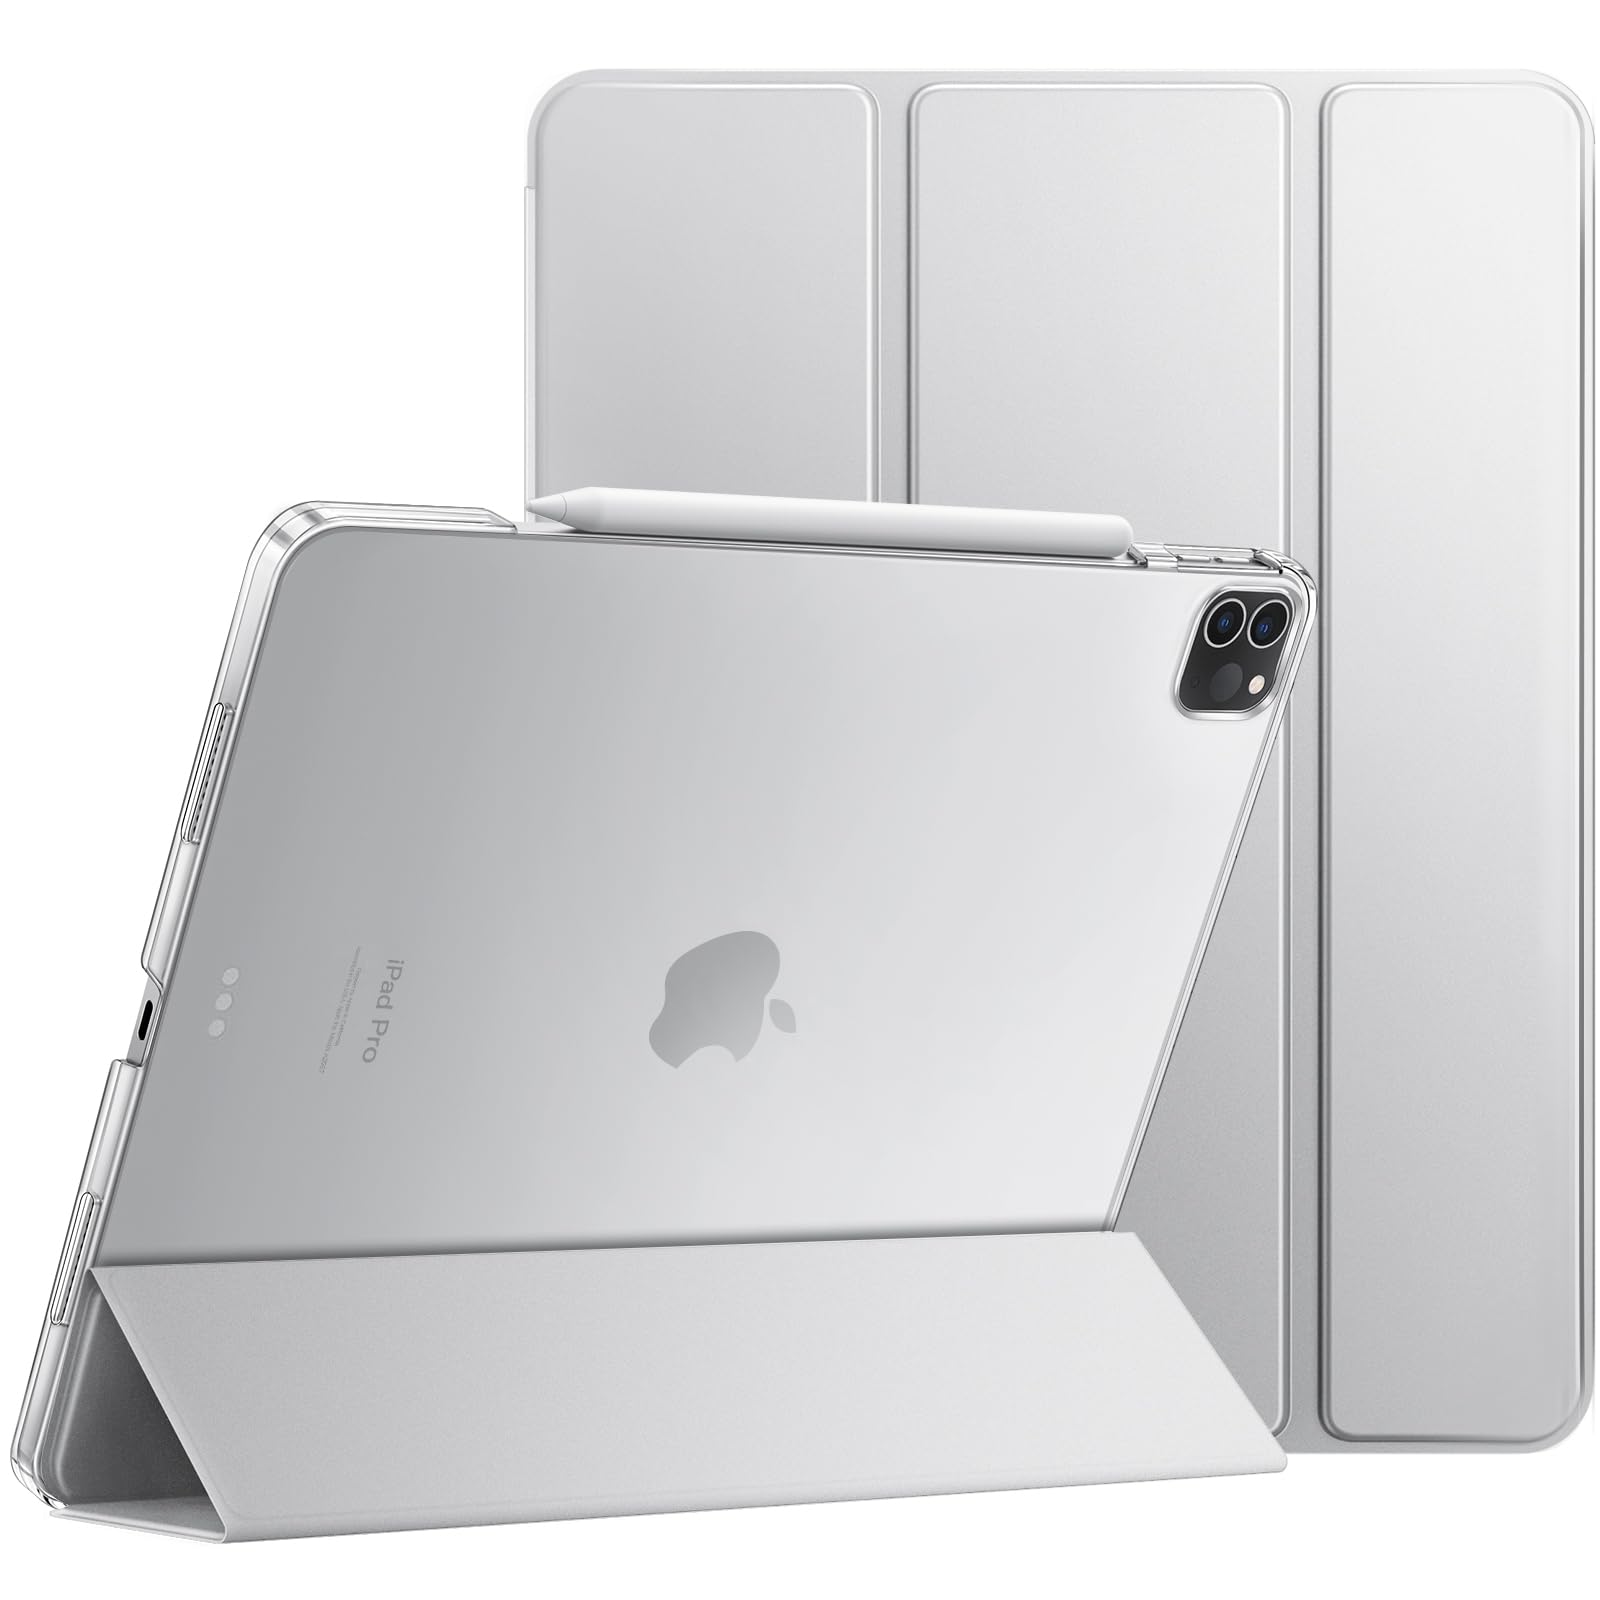 JEDirect iPadPro12.9インチ 第6/5世代、2022/2021モデル専用iPad Pro 12.9保護ケース Pencilワイヤレス充電対応 オートスリープ/ウェイクアップ機能付き スマートカバー (シルバー)